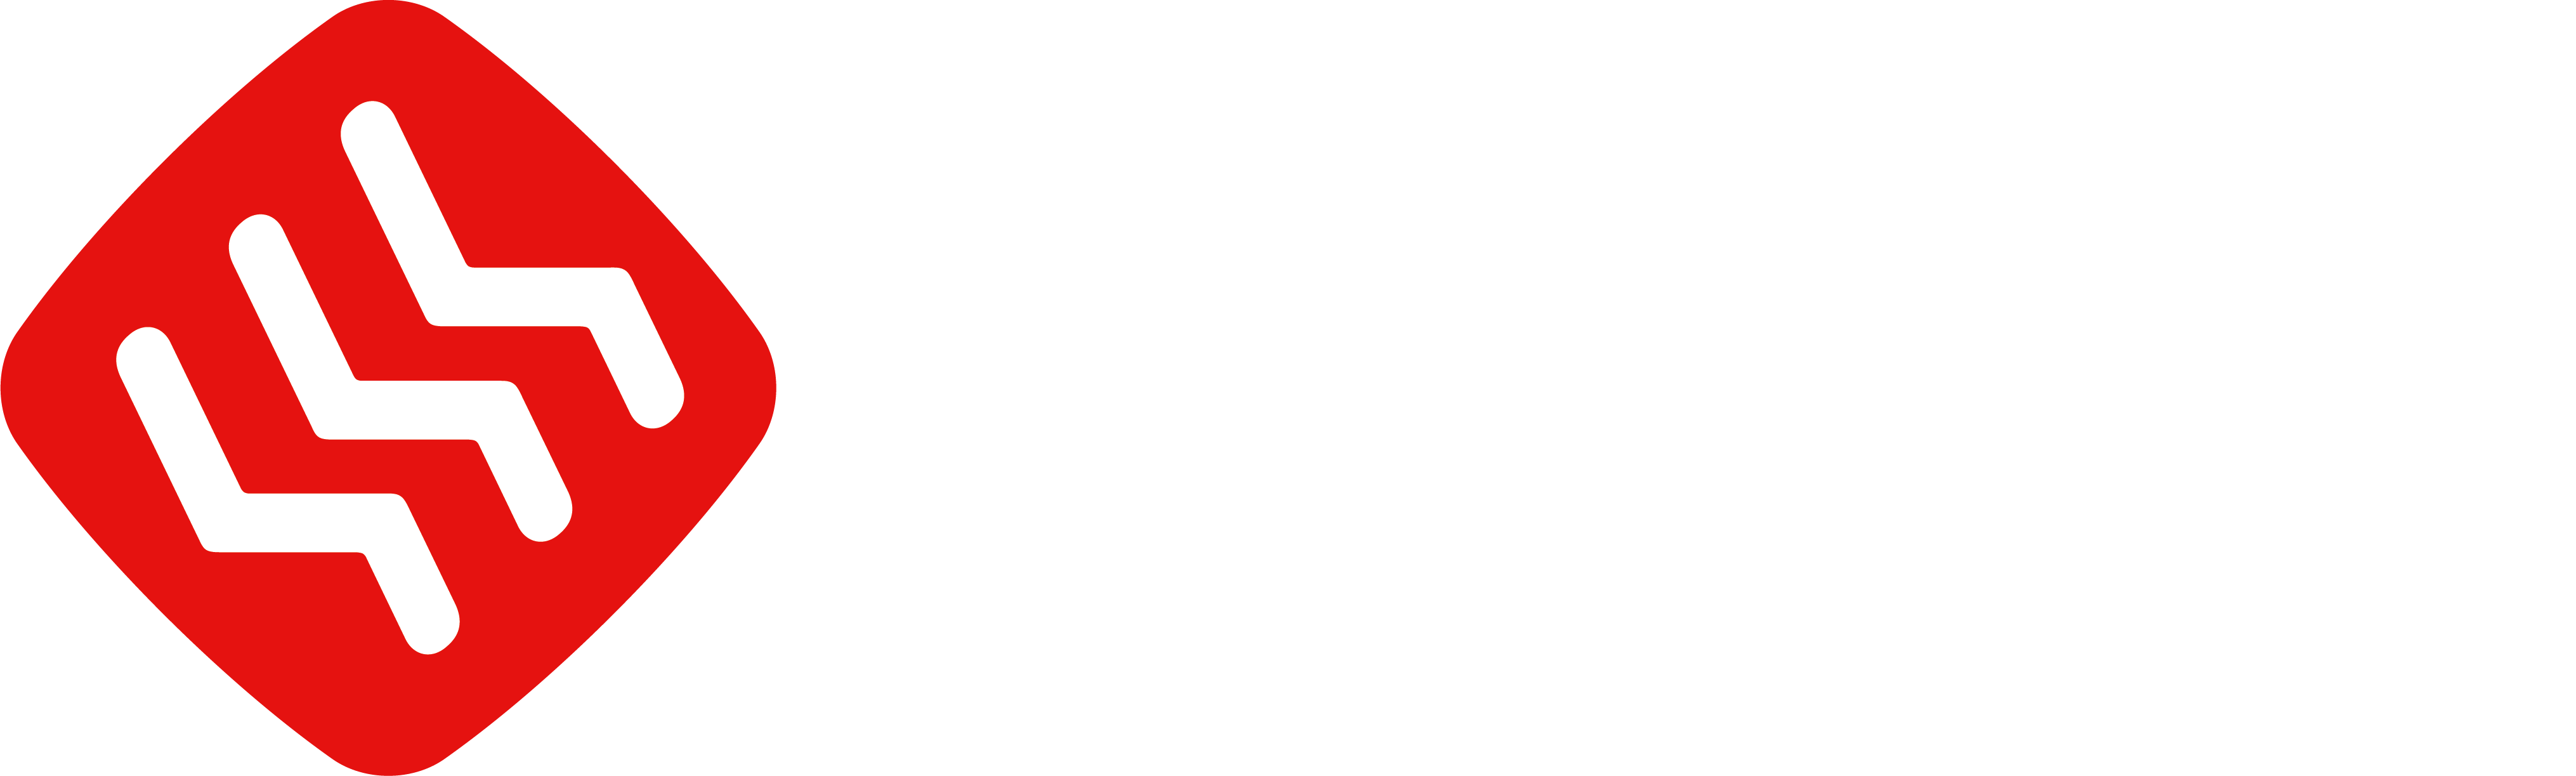 Family Inada Canada